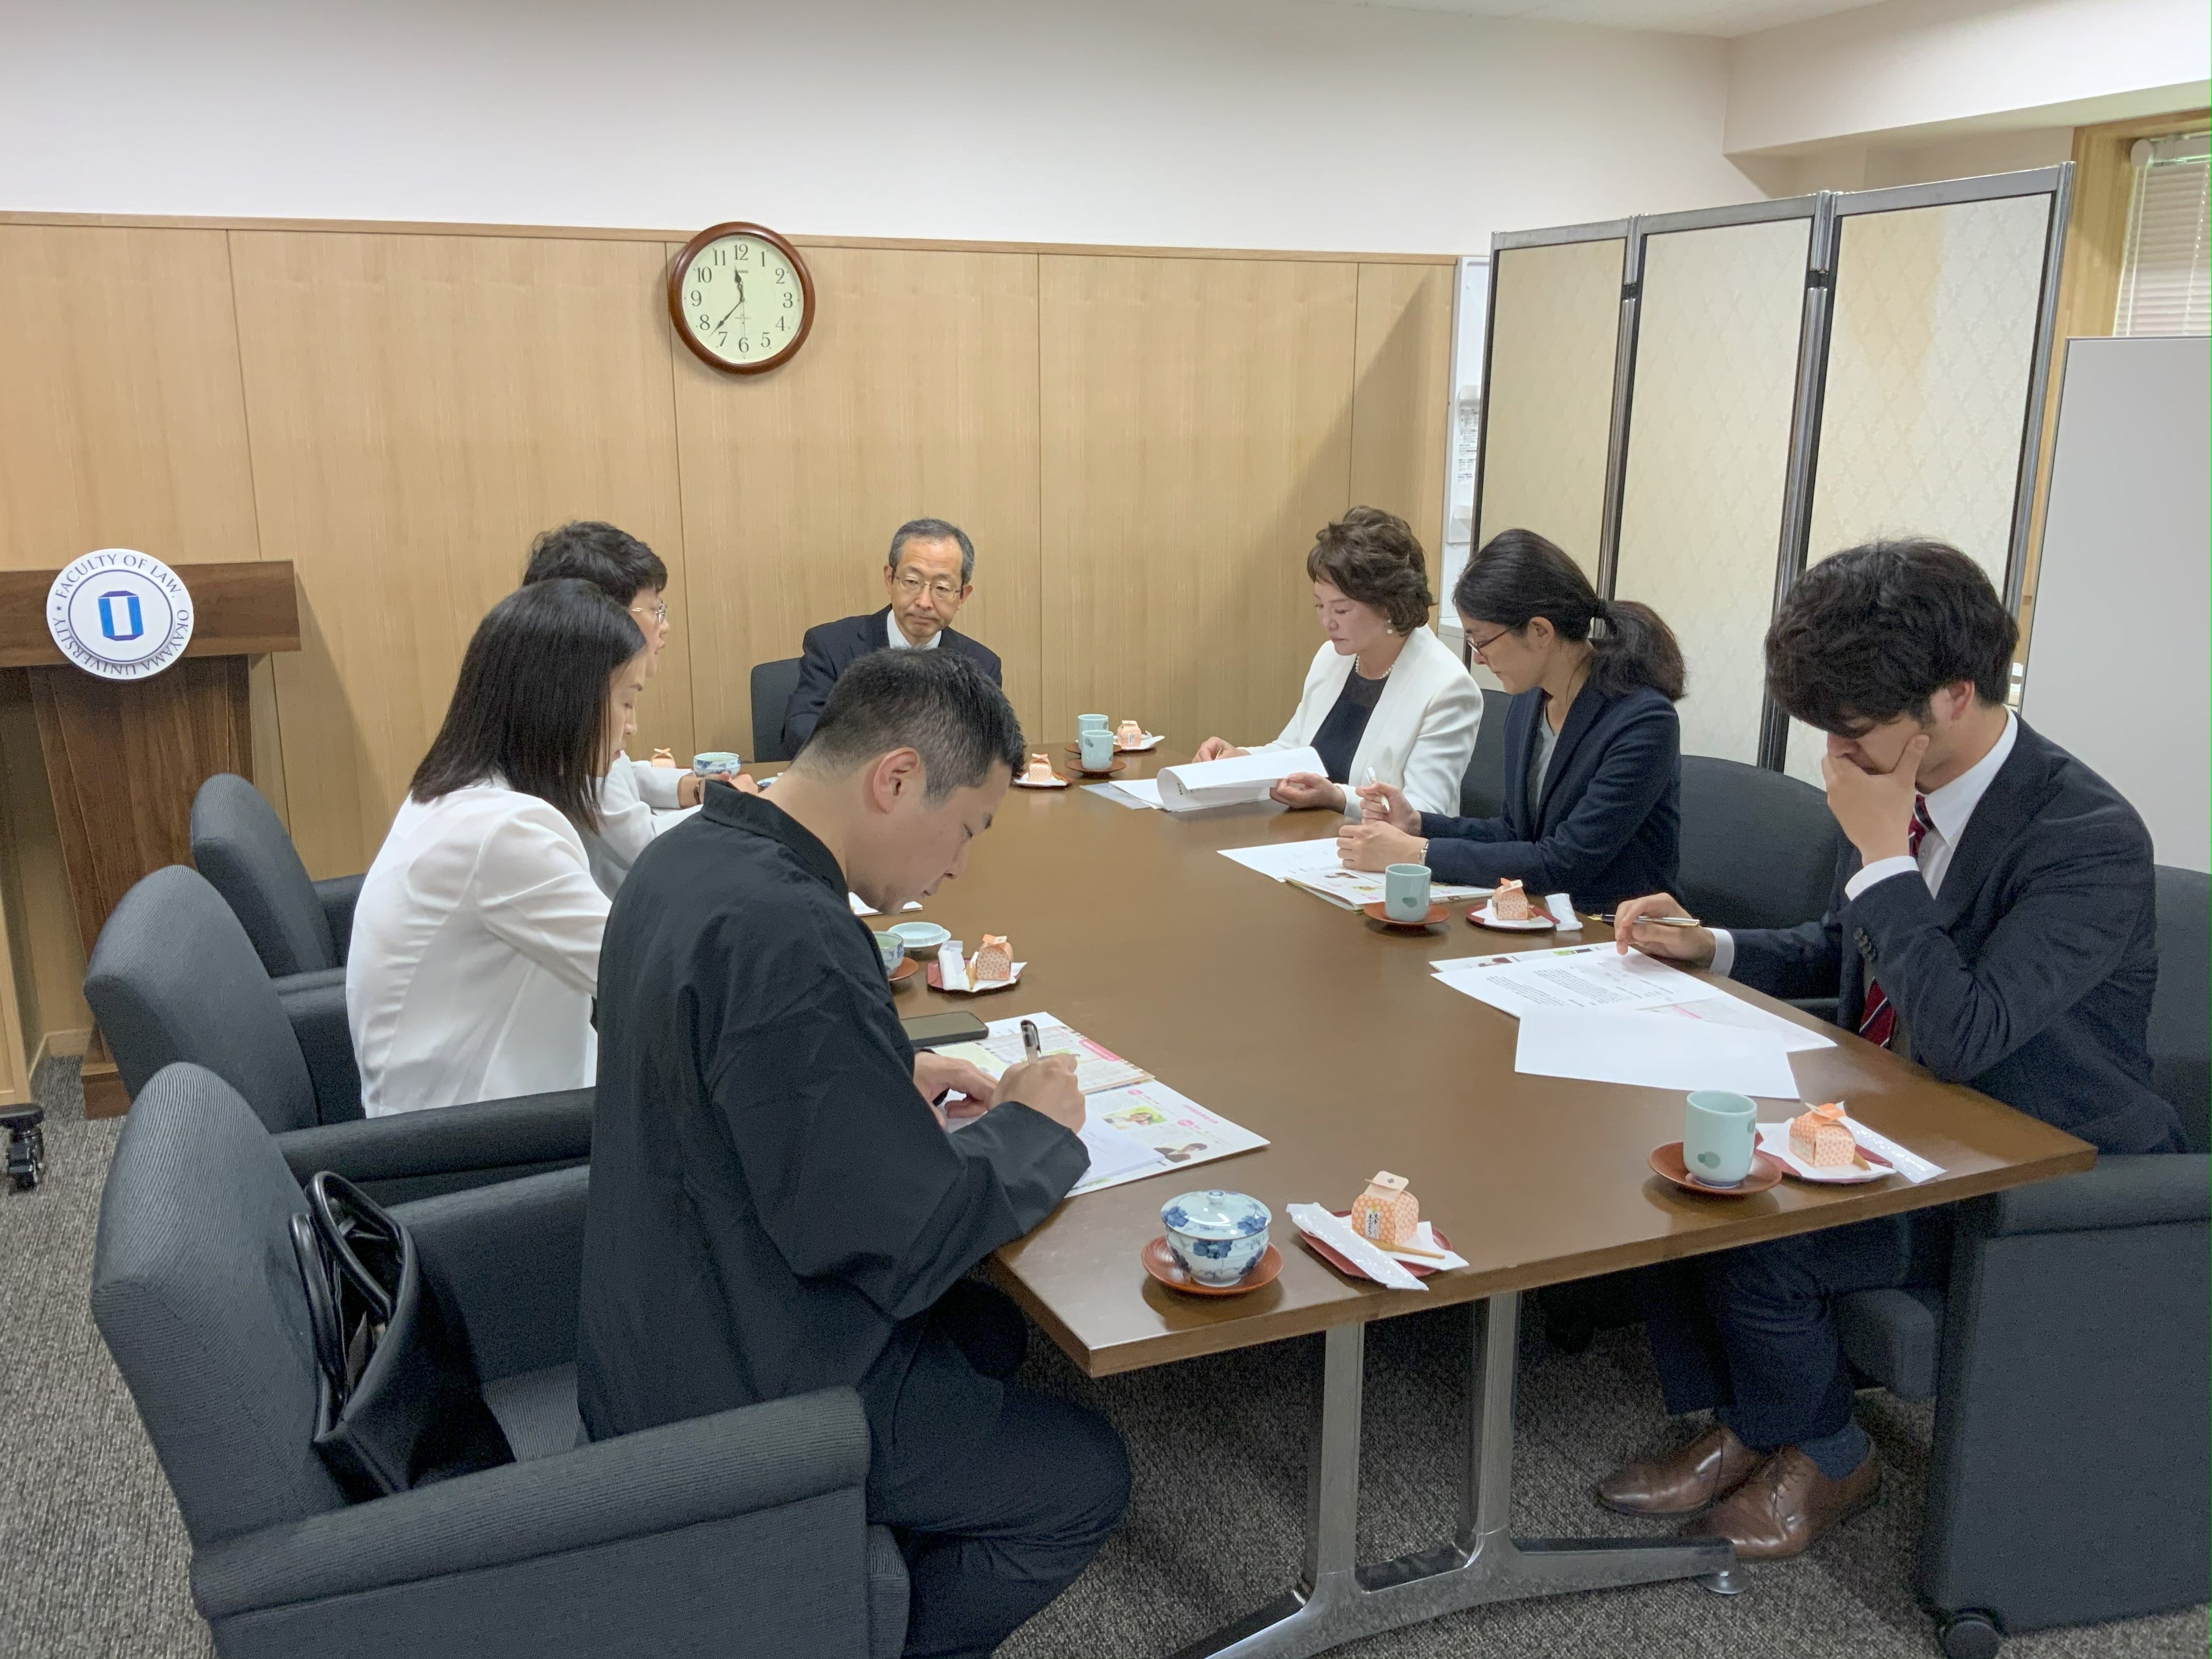 【岡山大学】貴州大学法学院訪問団が岡山大学法学部を訪問しました